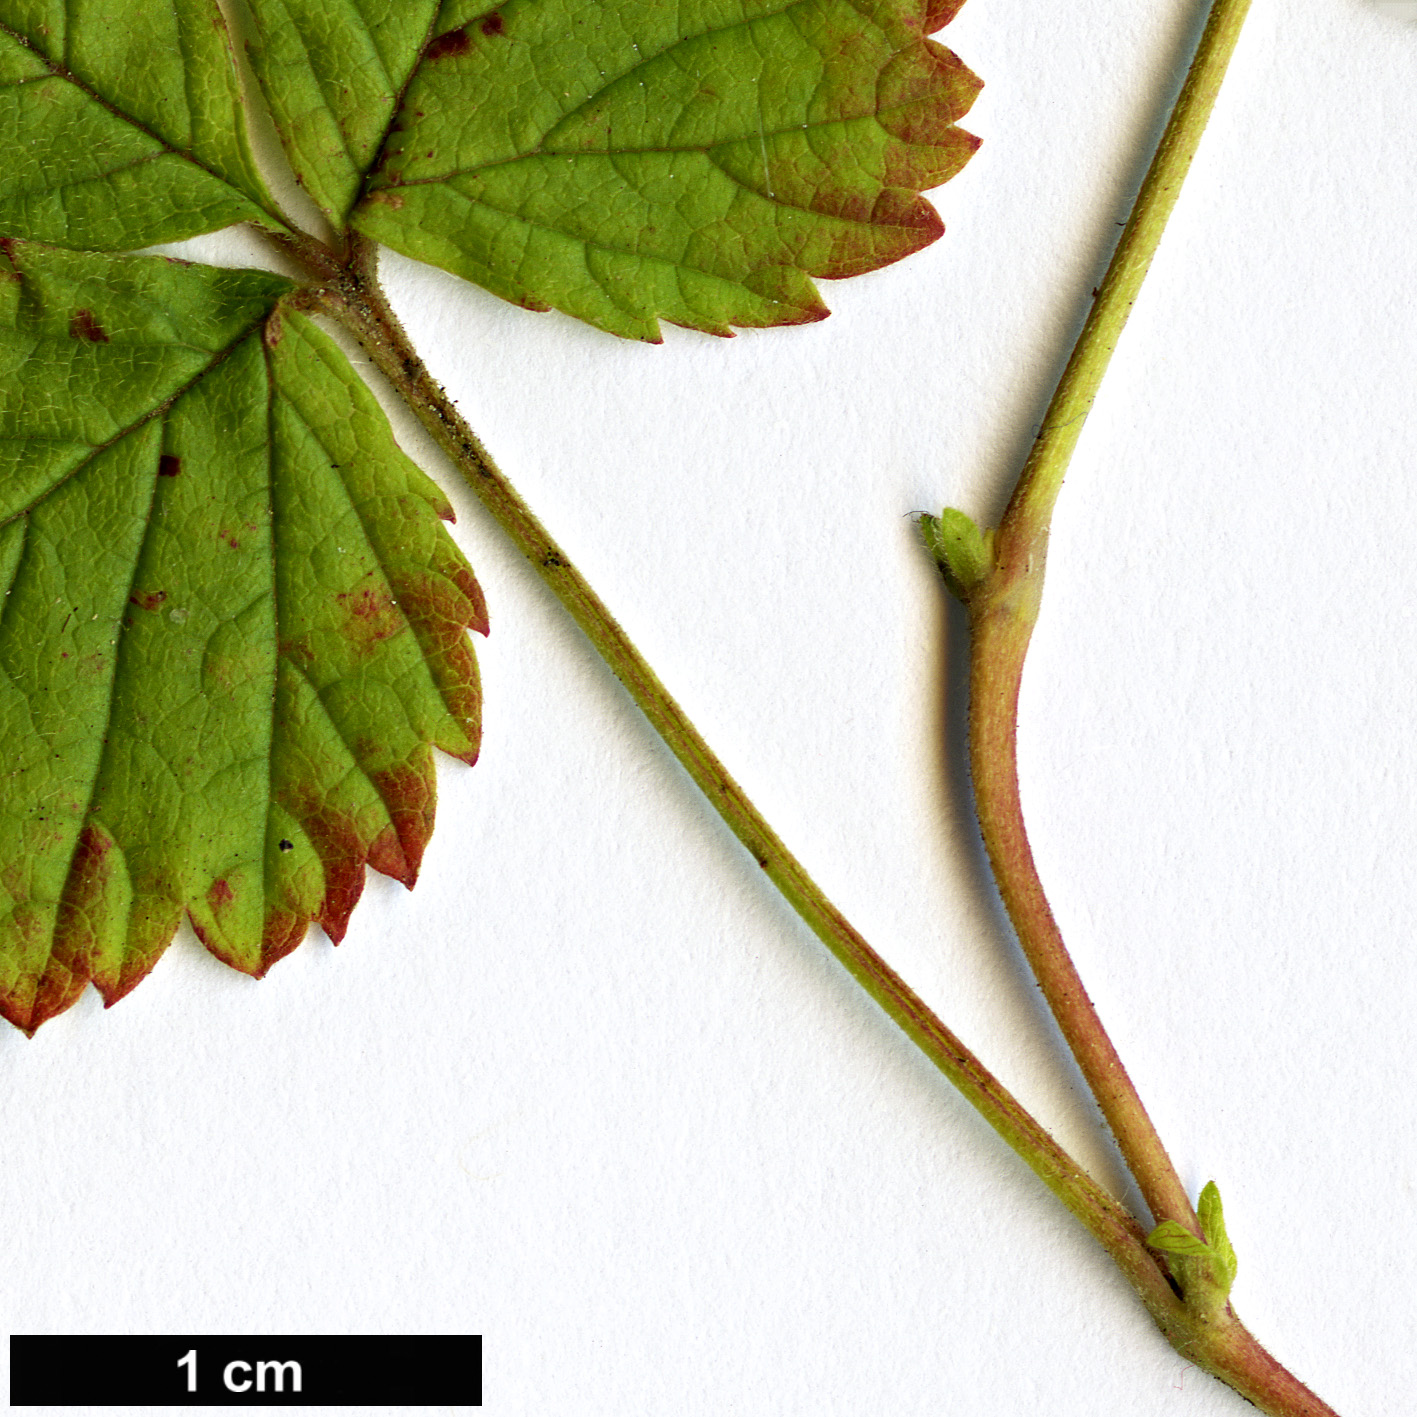 High resolution image: Family: Rosaceae - Genus: Rubus - Taxon: arcticus